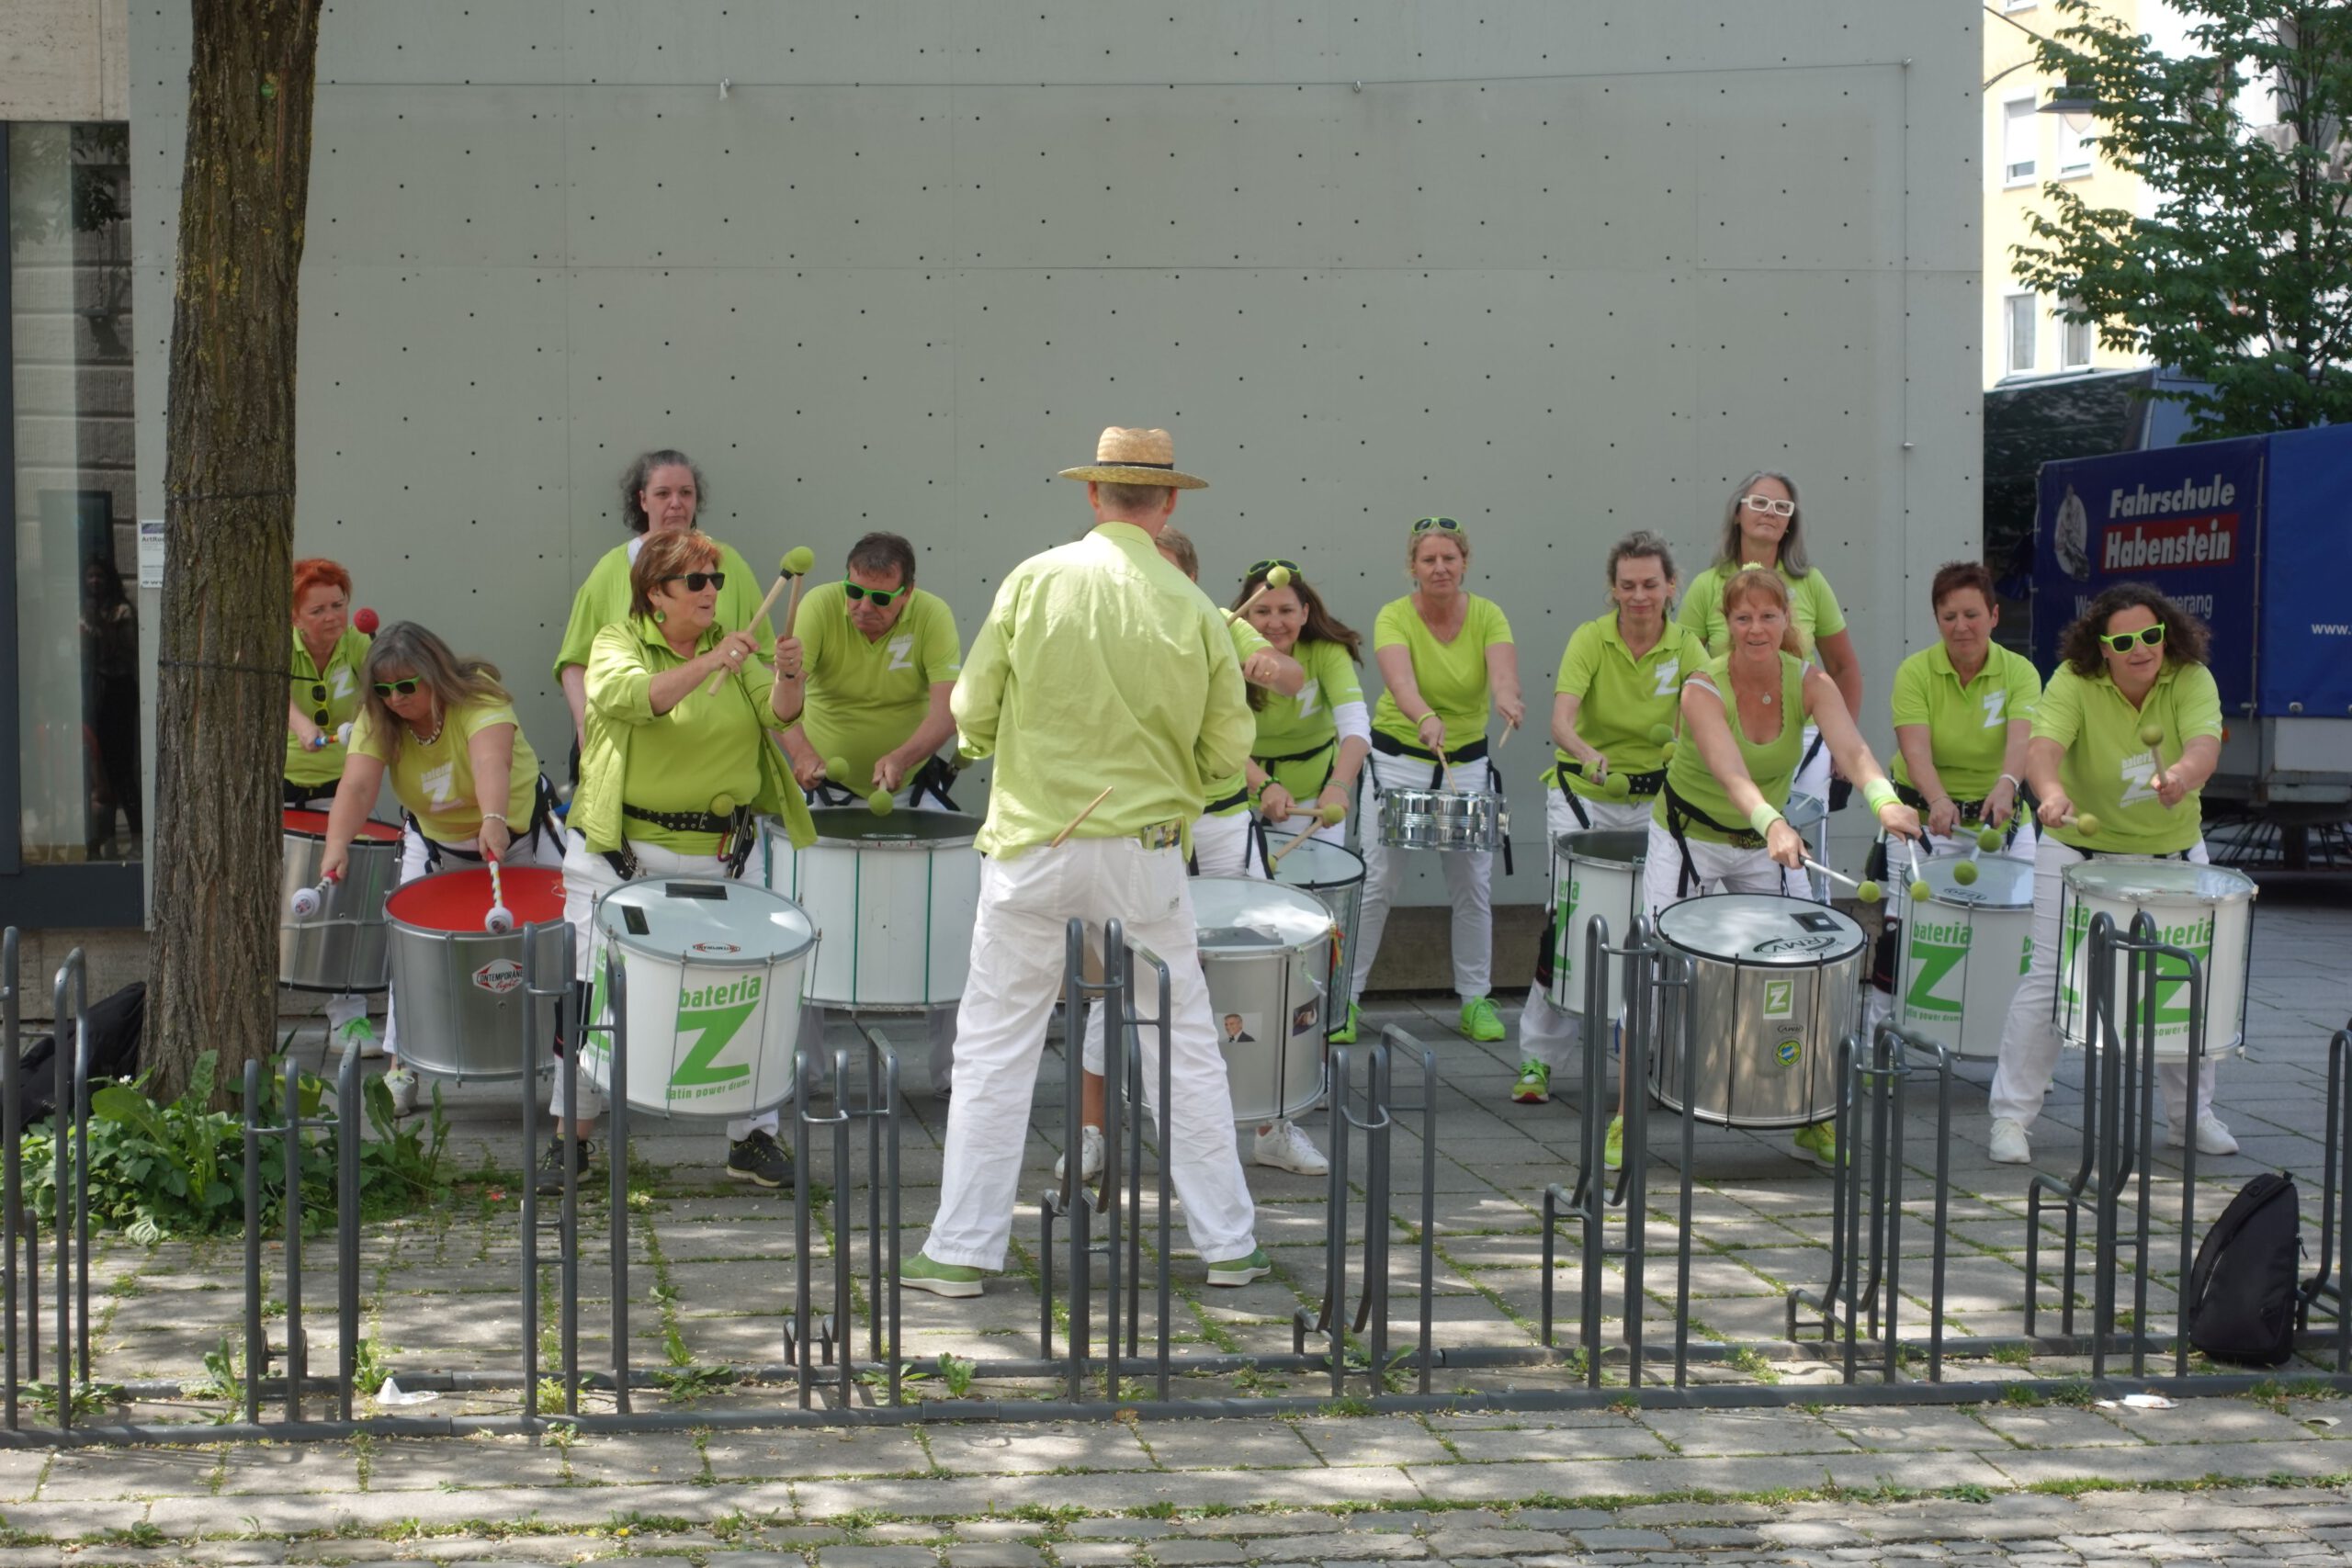 Trommelgruppe bei ehemaligen Sport-Karstadt mit grünen T-Shirts und weißen Hosen